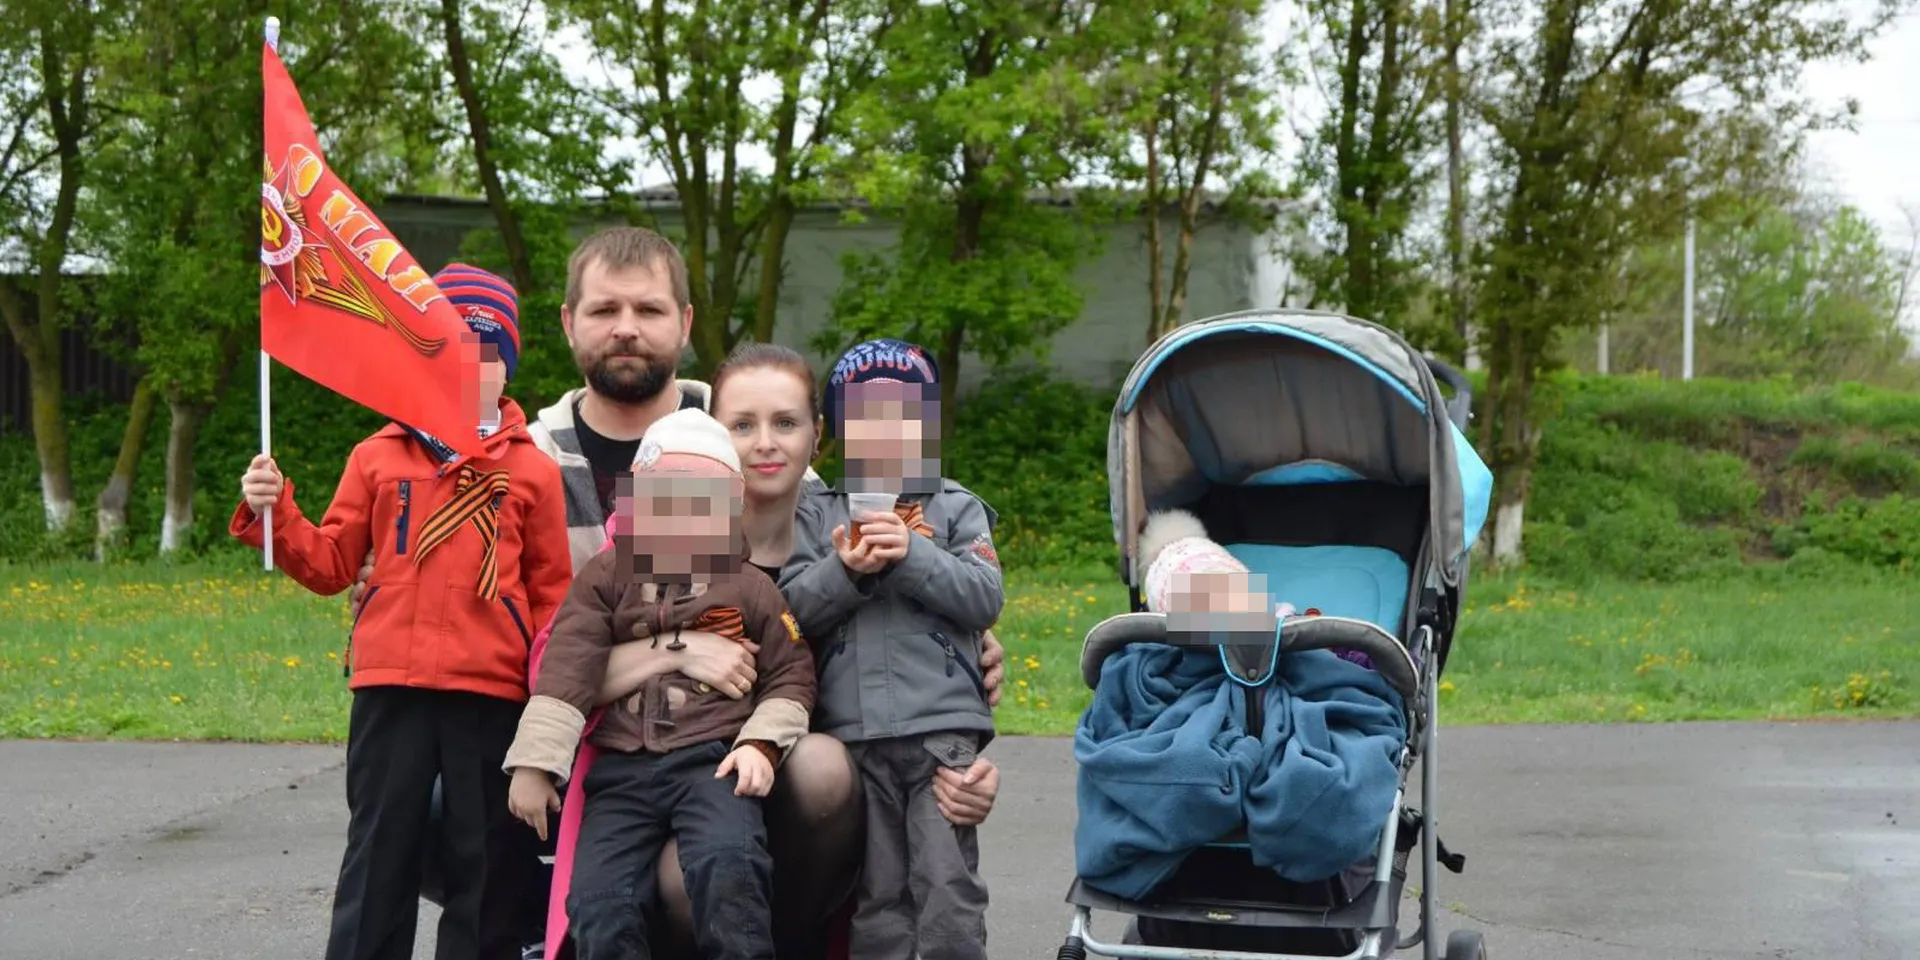 Многодетный отец из Белгородской области приобрел оружие во время сбора гуманитарной помощи для российской армии, но избежал реального срока, потому что хотел «защитить семью от нападения» со стороны Украины